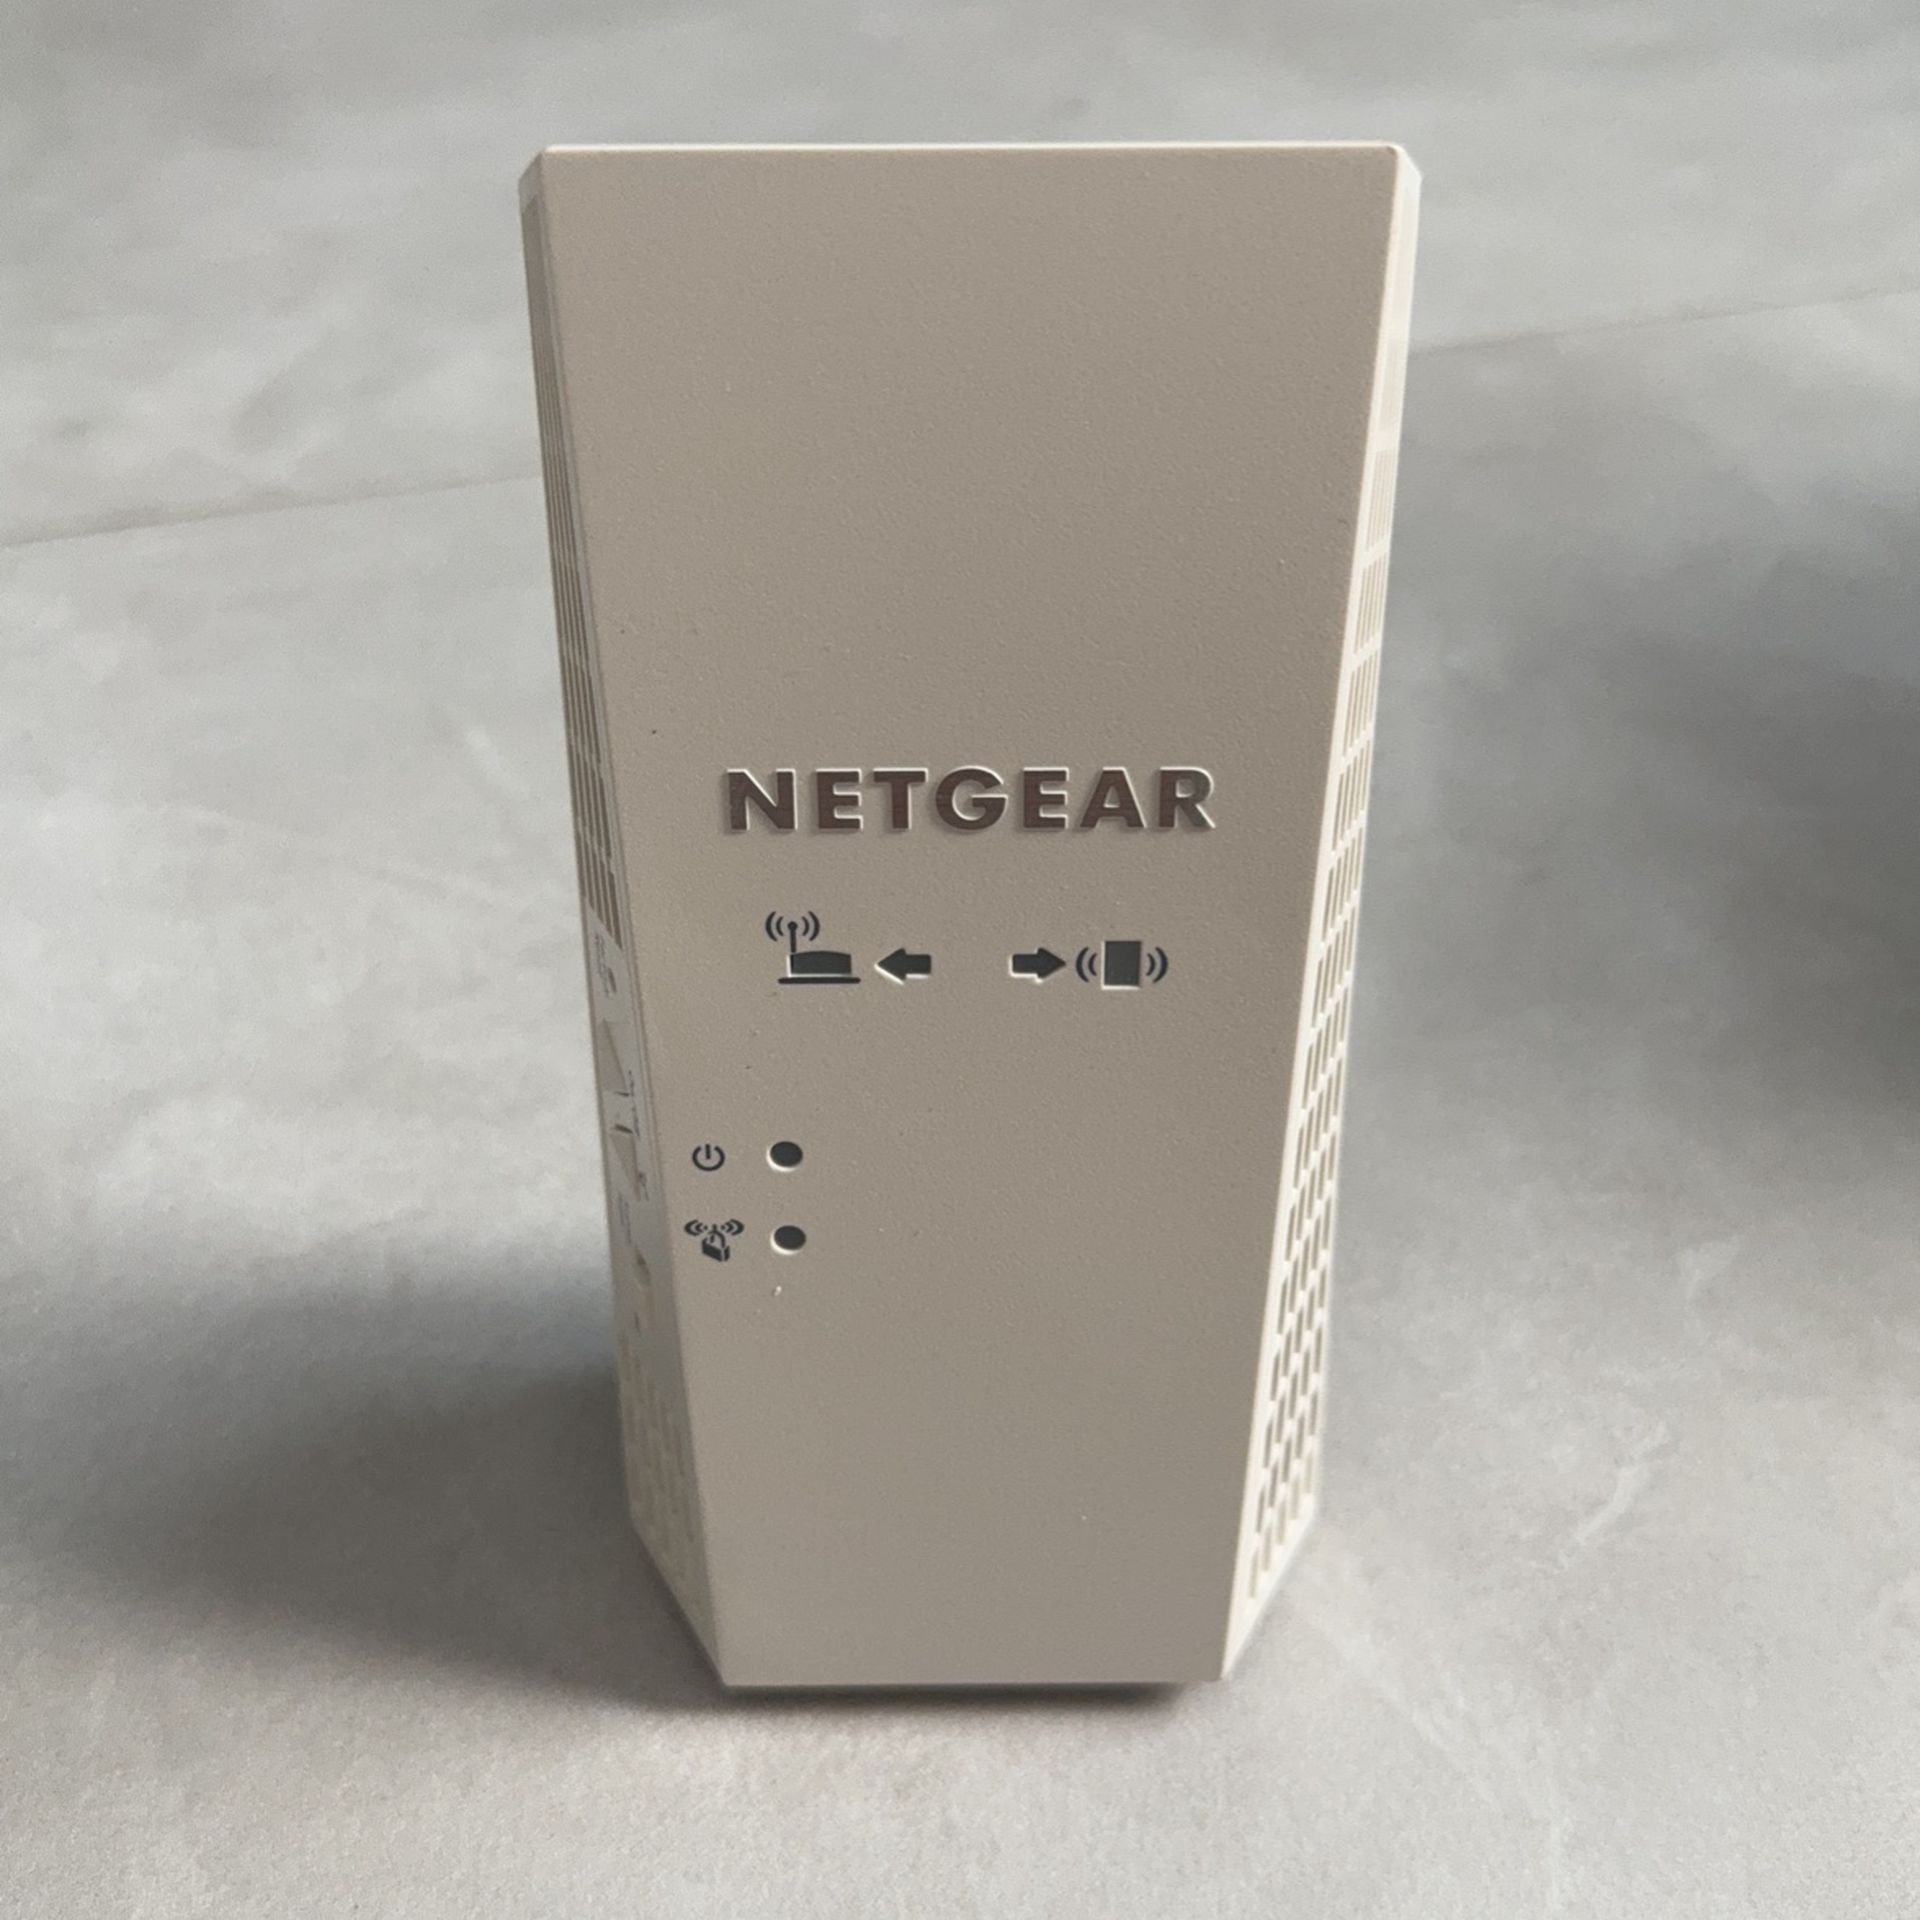 Netgear Ex7300 WiFi Extender